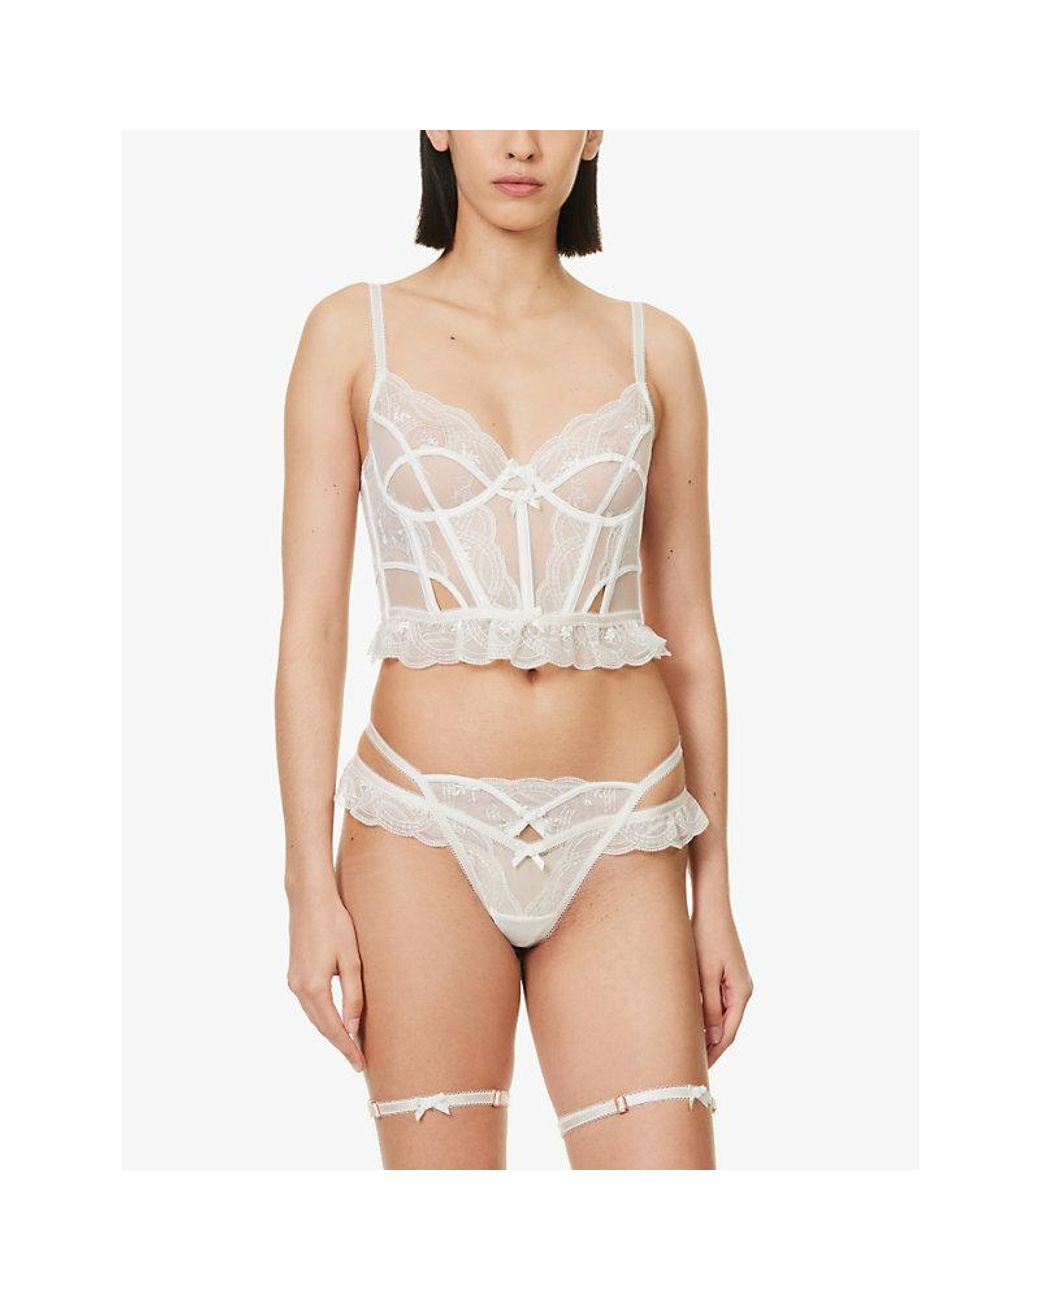 White Silk Ruffled Underwear and Bralette Set